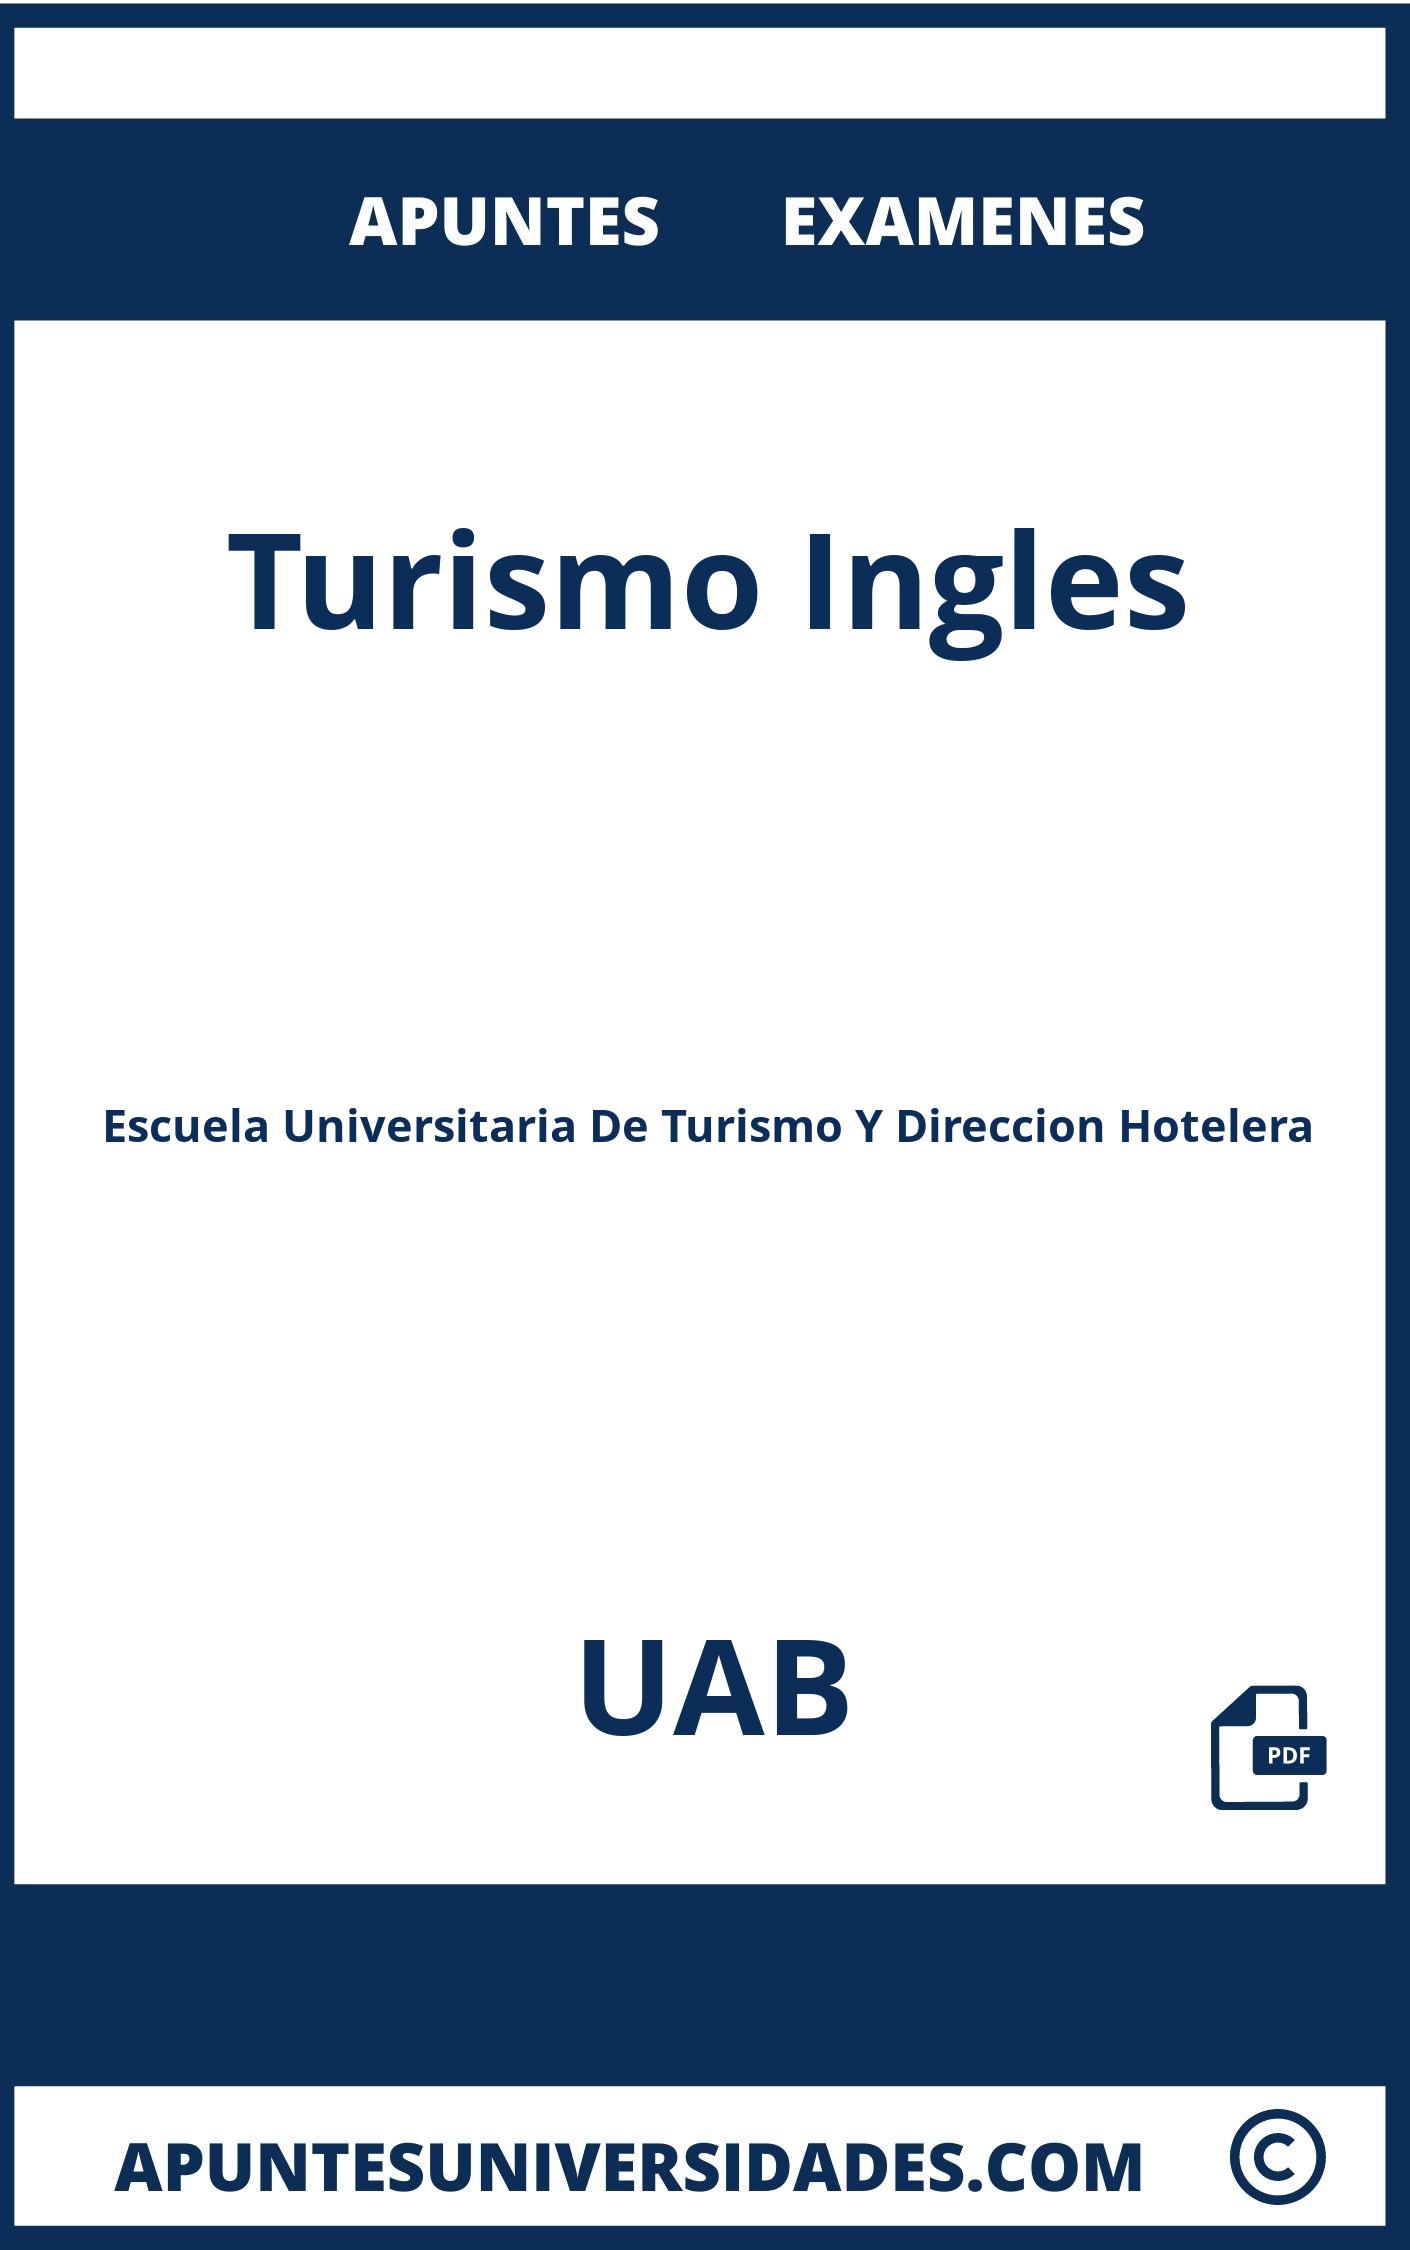 Apuntes y Examenes de Turismo Ingles UAB